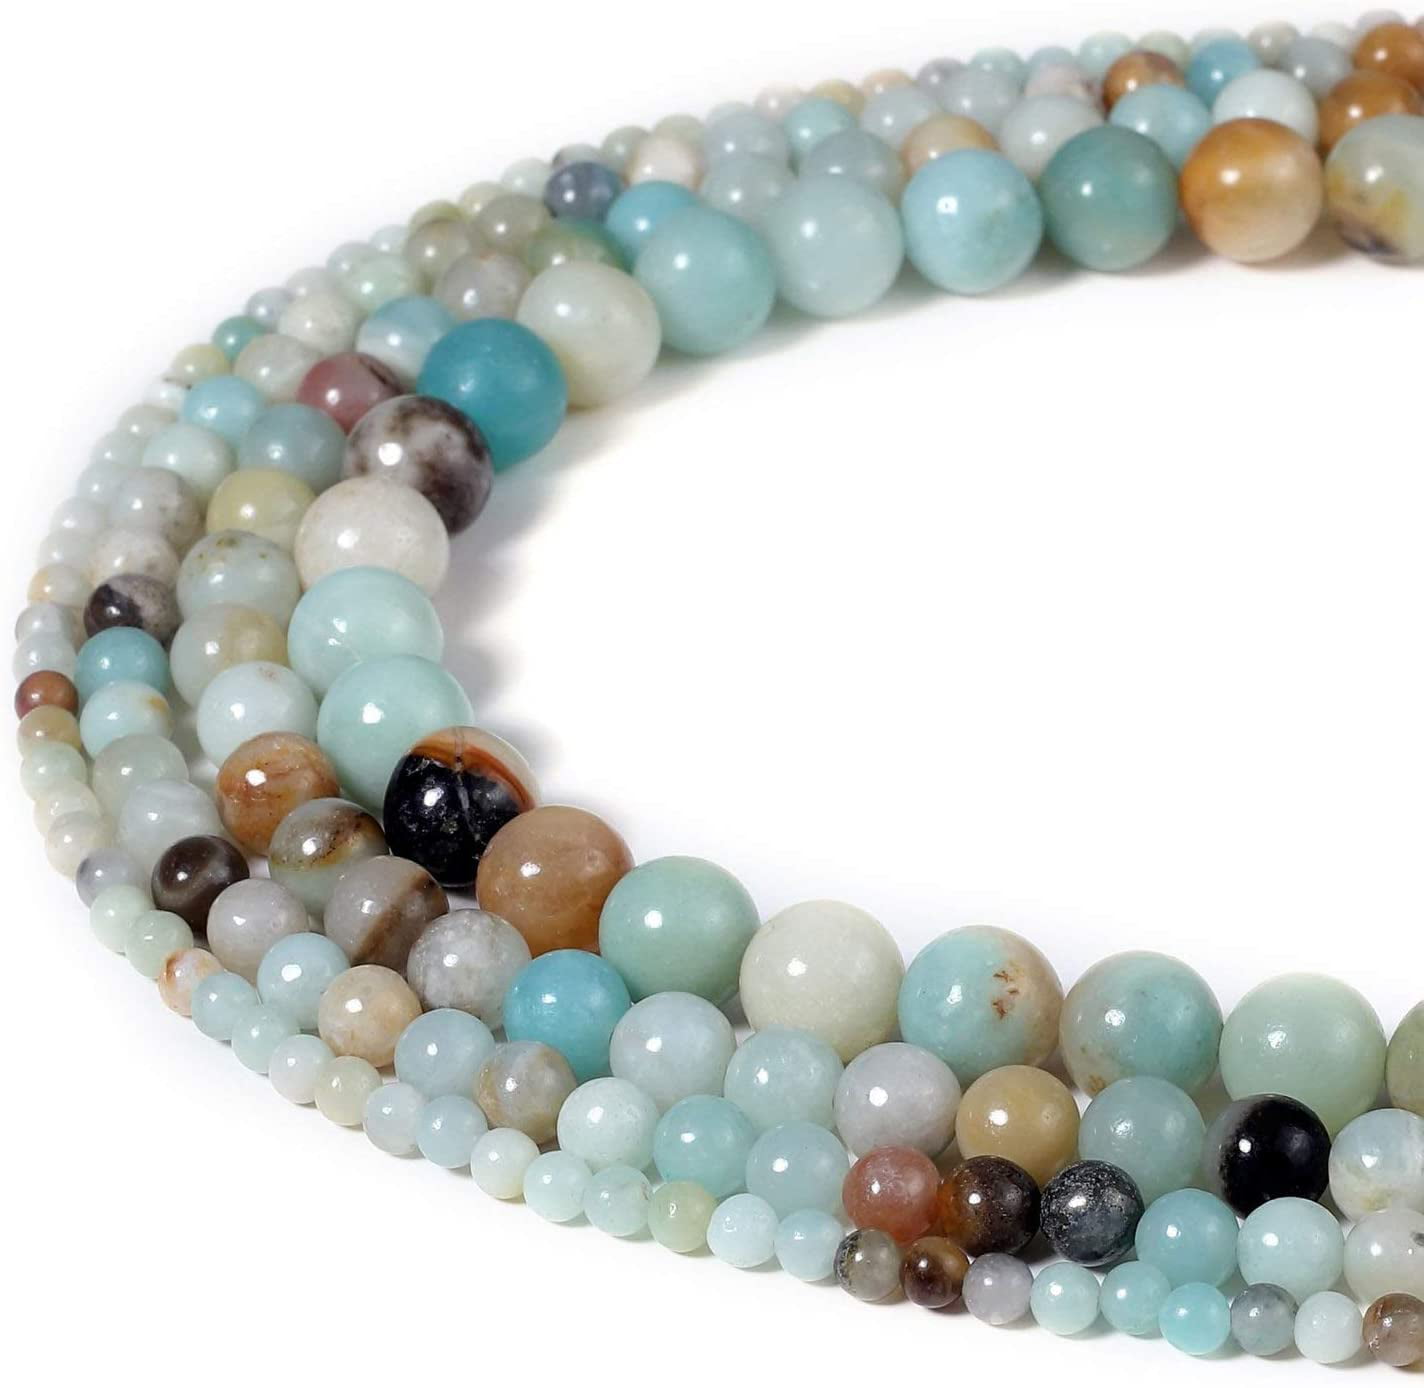 Natural Round Gemstone Blue Aquamarine Quartz Beads Jewelry Making Strand 15" 